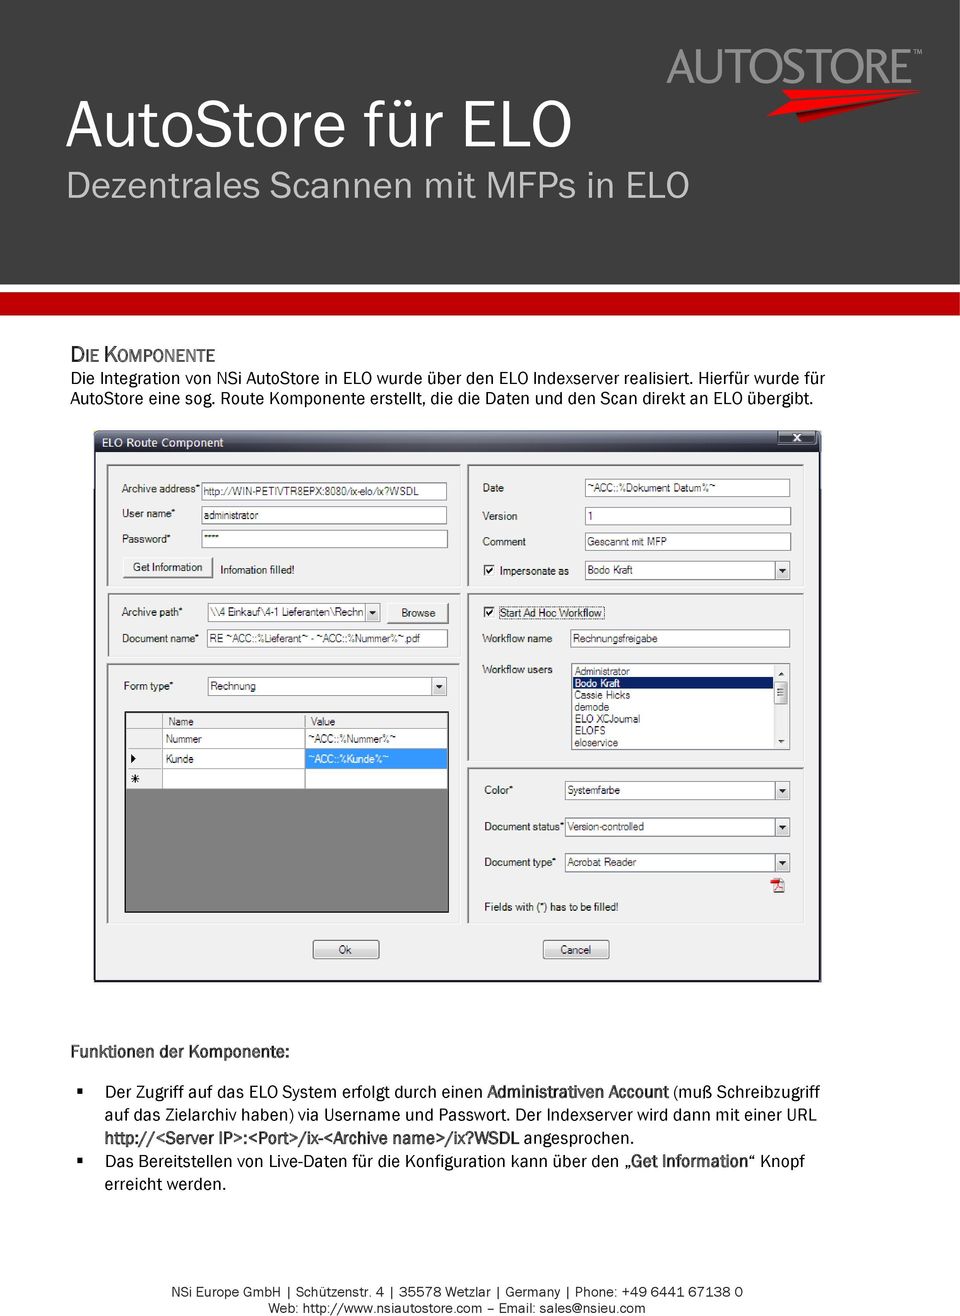 Funktionen der Komponente: Der Zugriff auf das ELO System erfolgt durch einen Administrativen Account (muß Schreibzugriff auf das Zielarchiv haben)